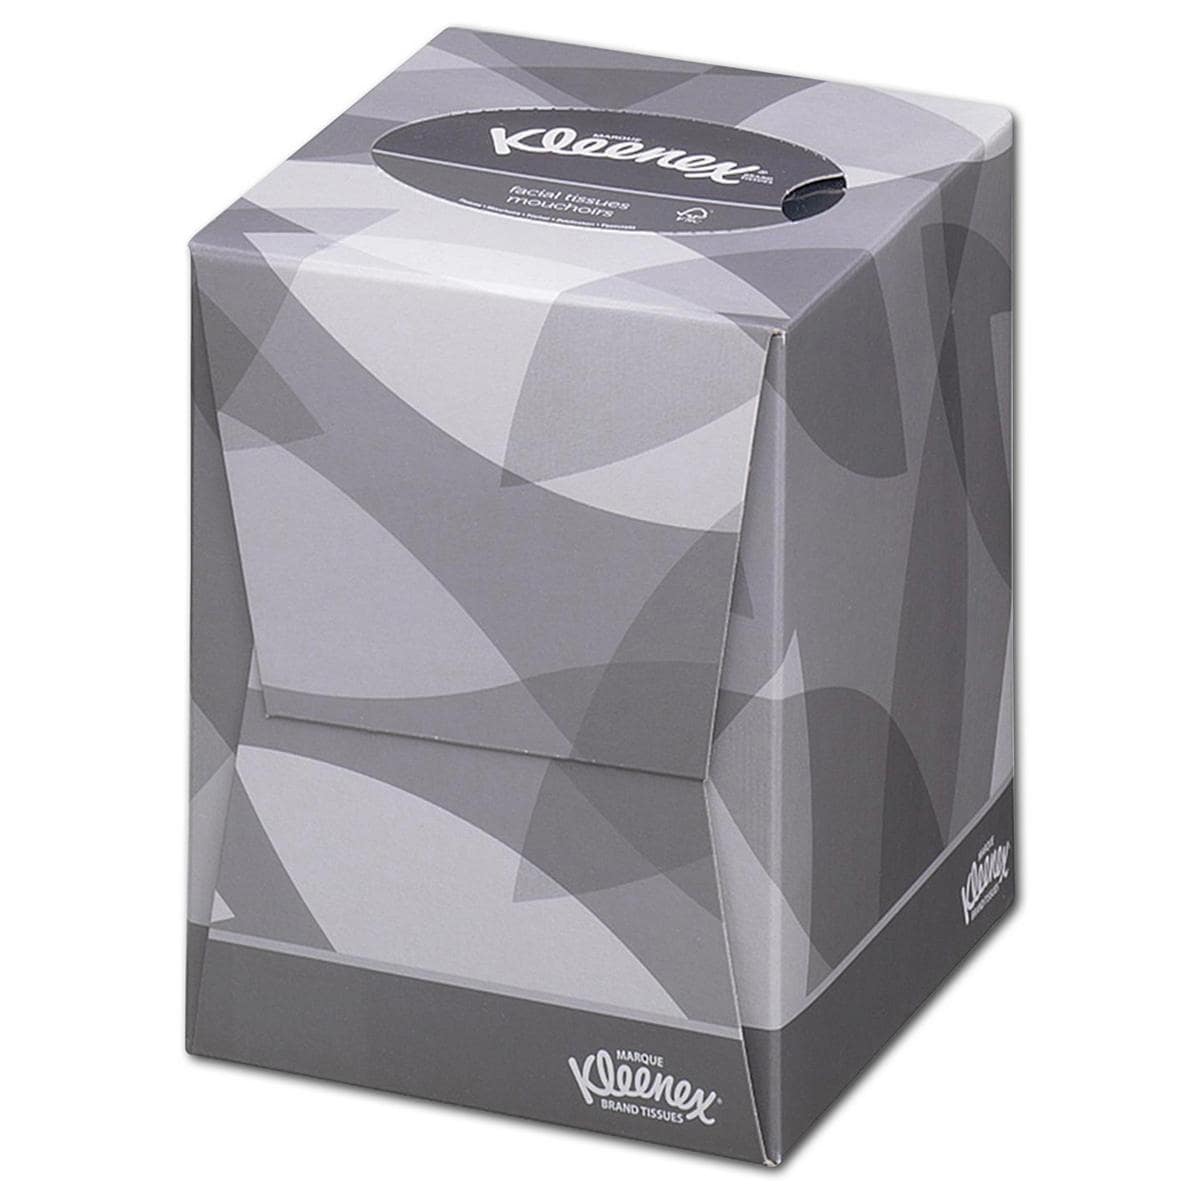 Kleenex Facial tissue kubus - # 8834, 12 doosjes met elk 88 stuks